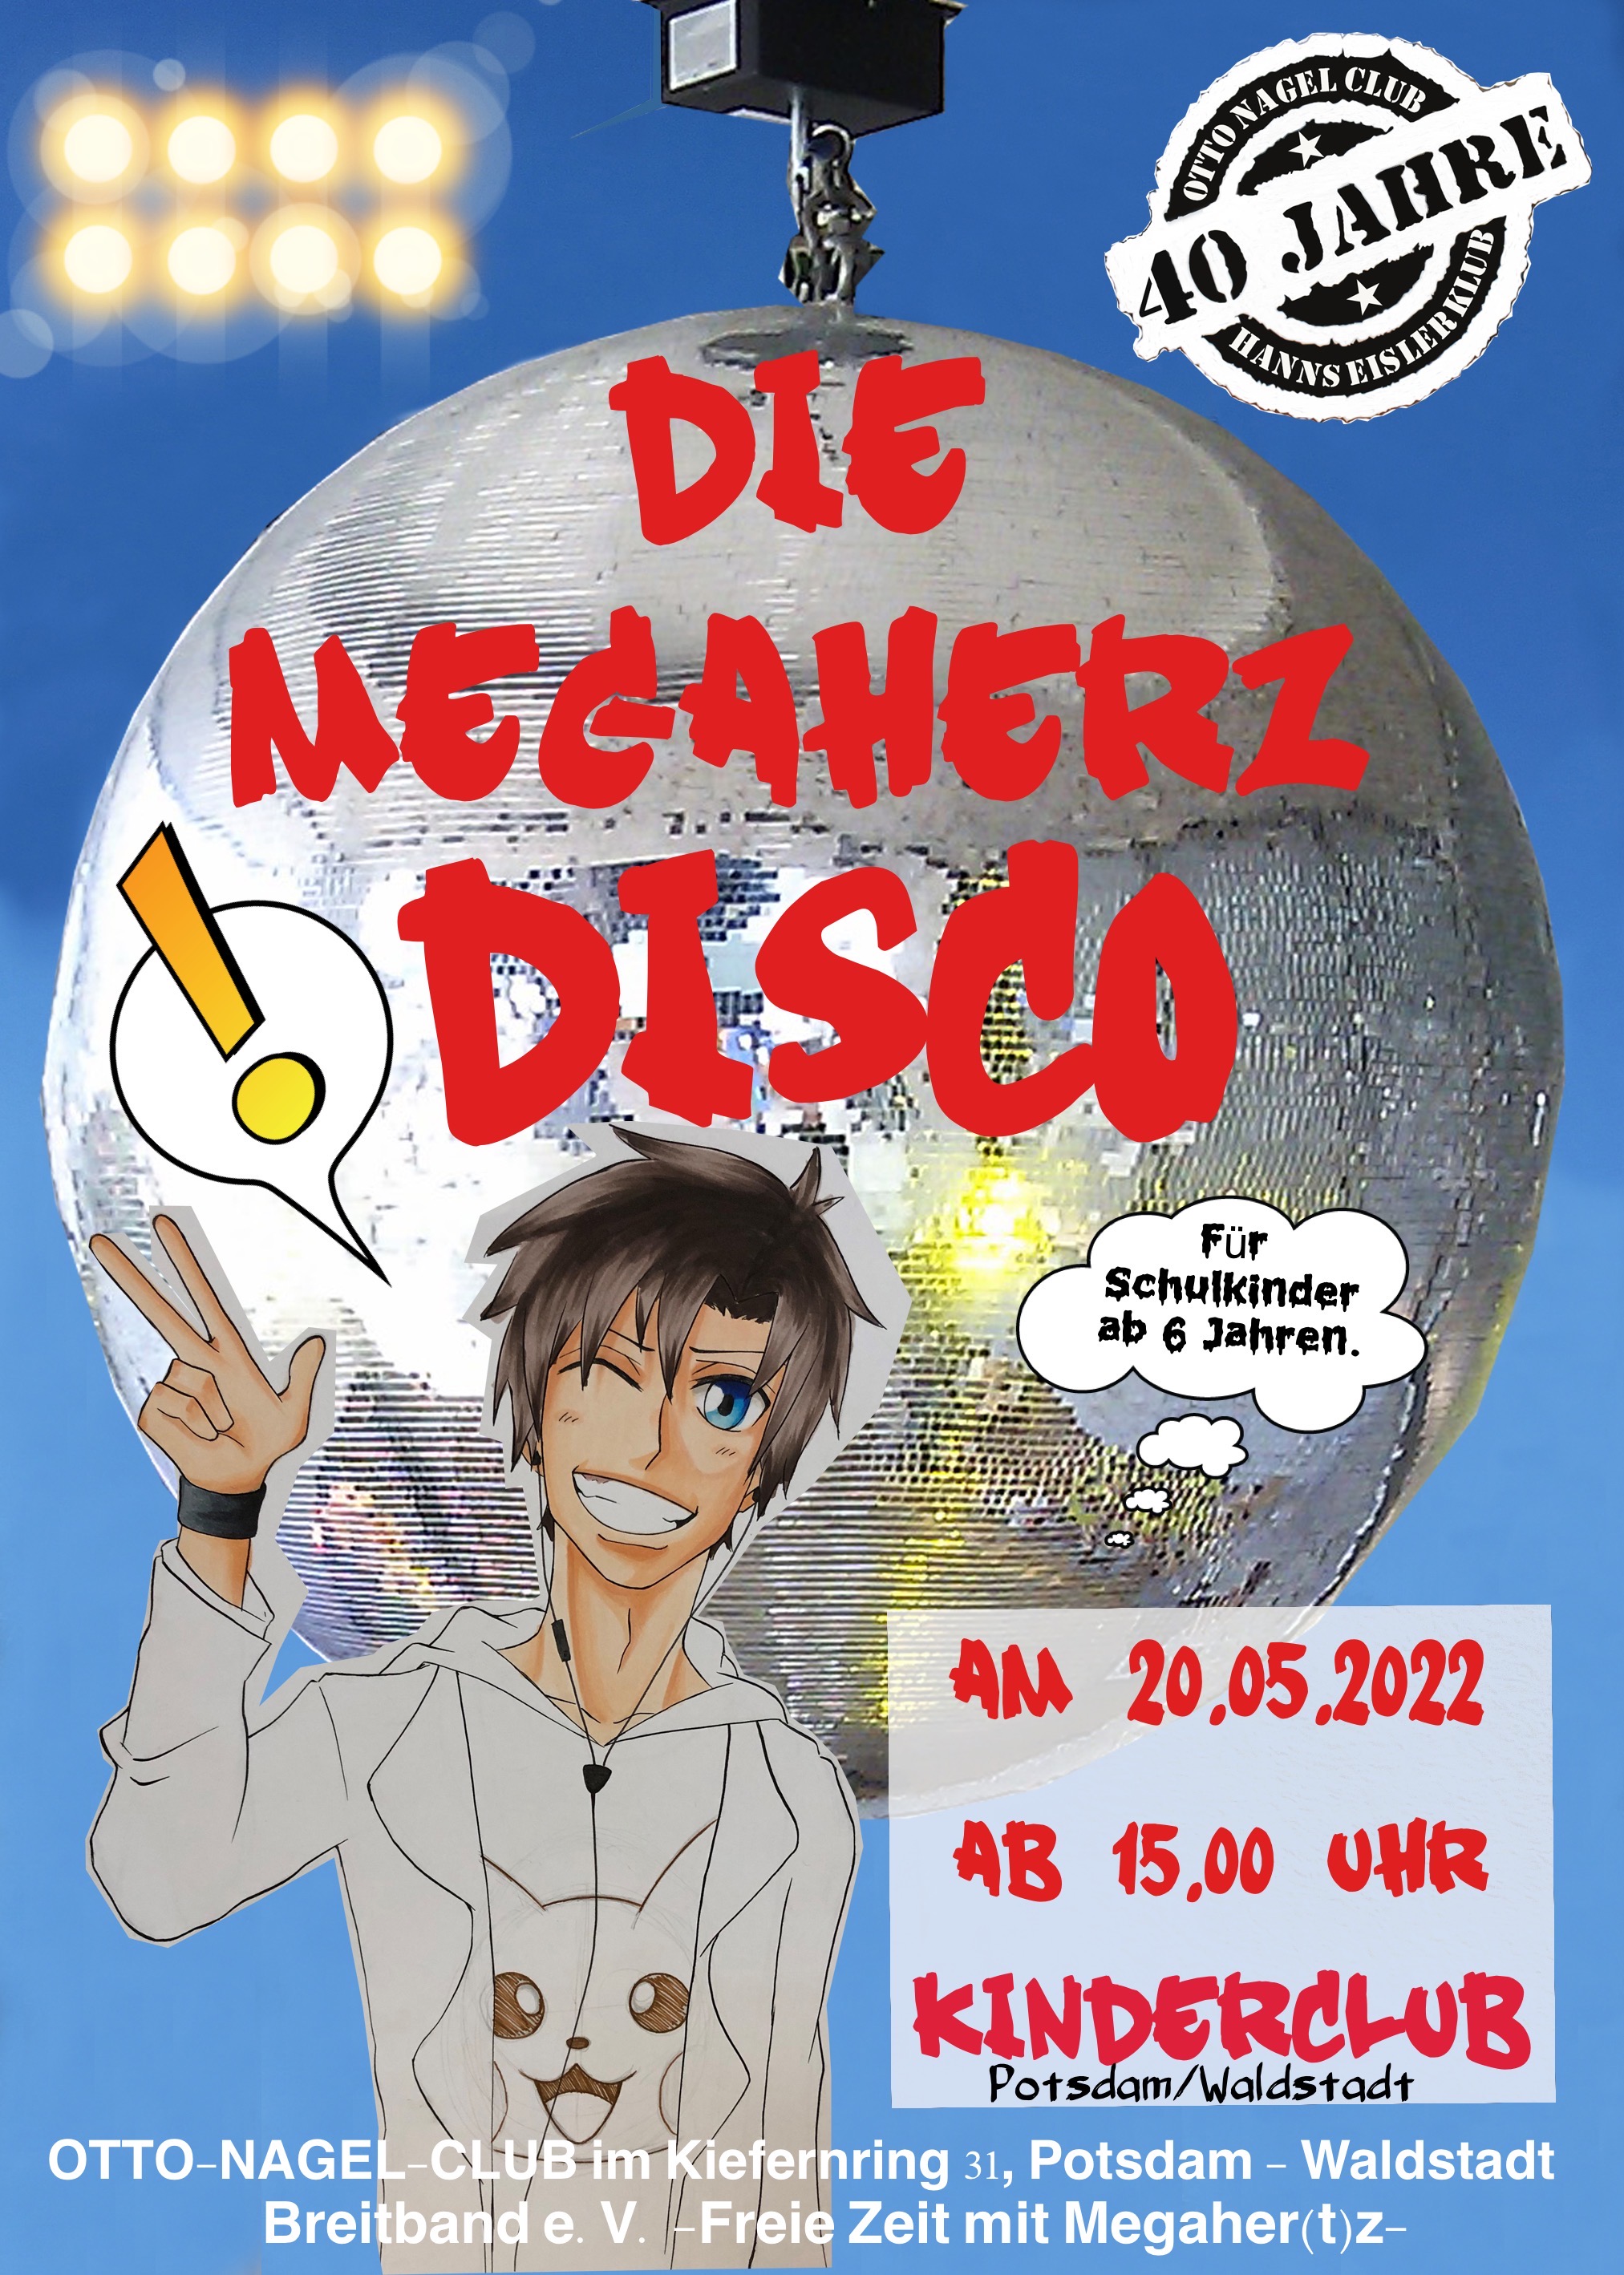 Plakat mit einer Discokugel und einem Anime-Jungen zur Ankündigung der Megaherz-Disco